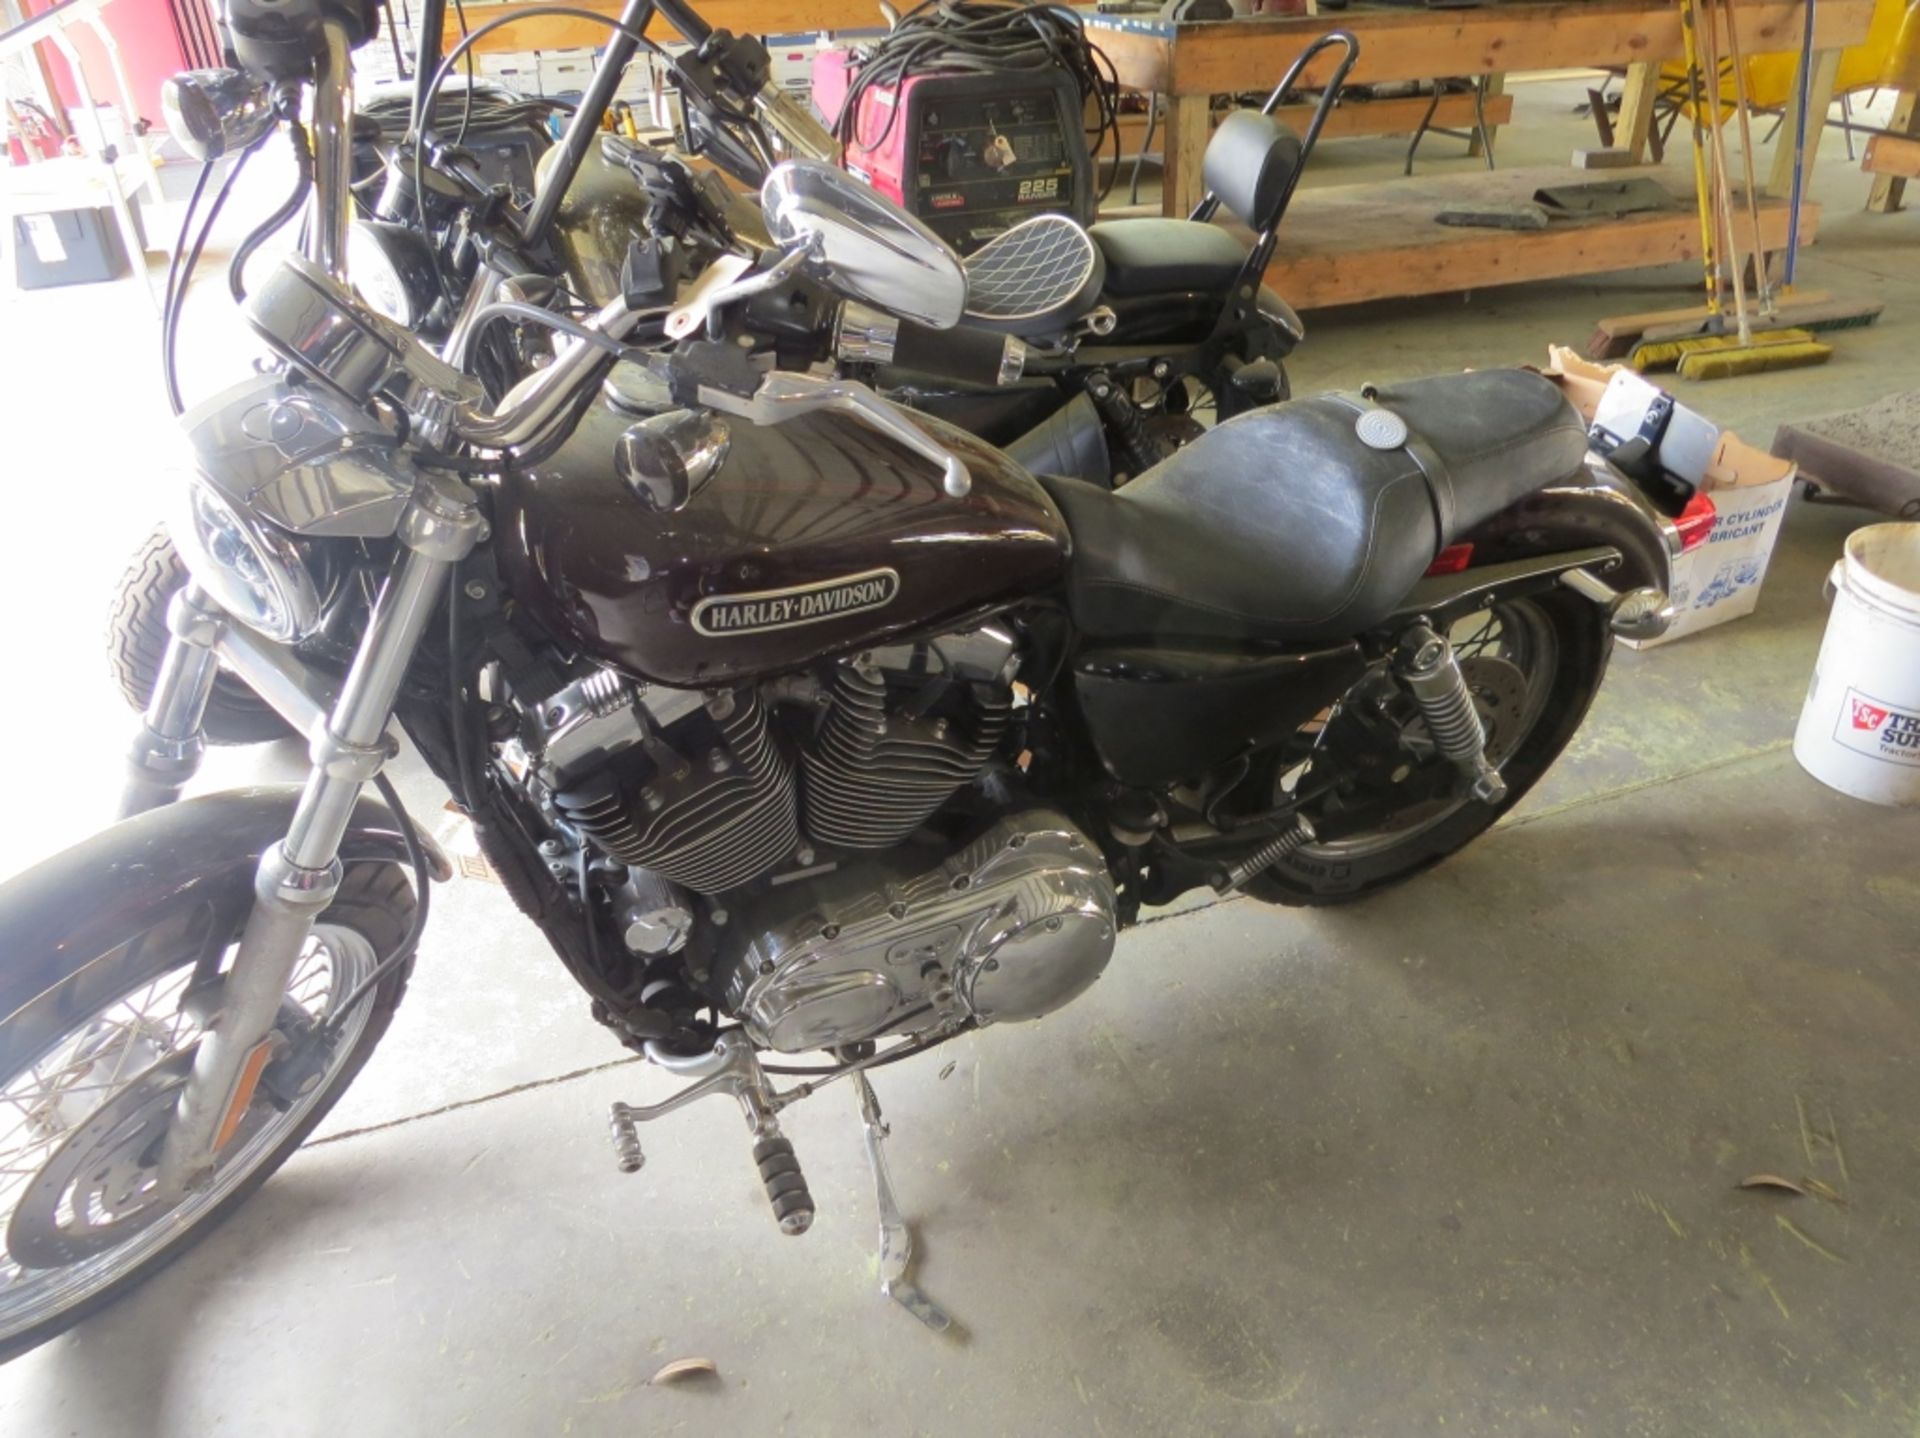 2007 Harley Davidson Sporster XL1200 VIN: 1HD1CX3137K443104 Glittery Garnet in color 16,000 miles